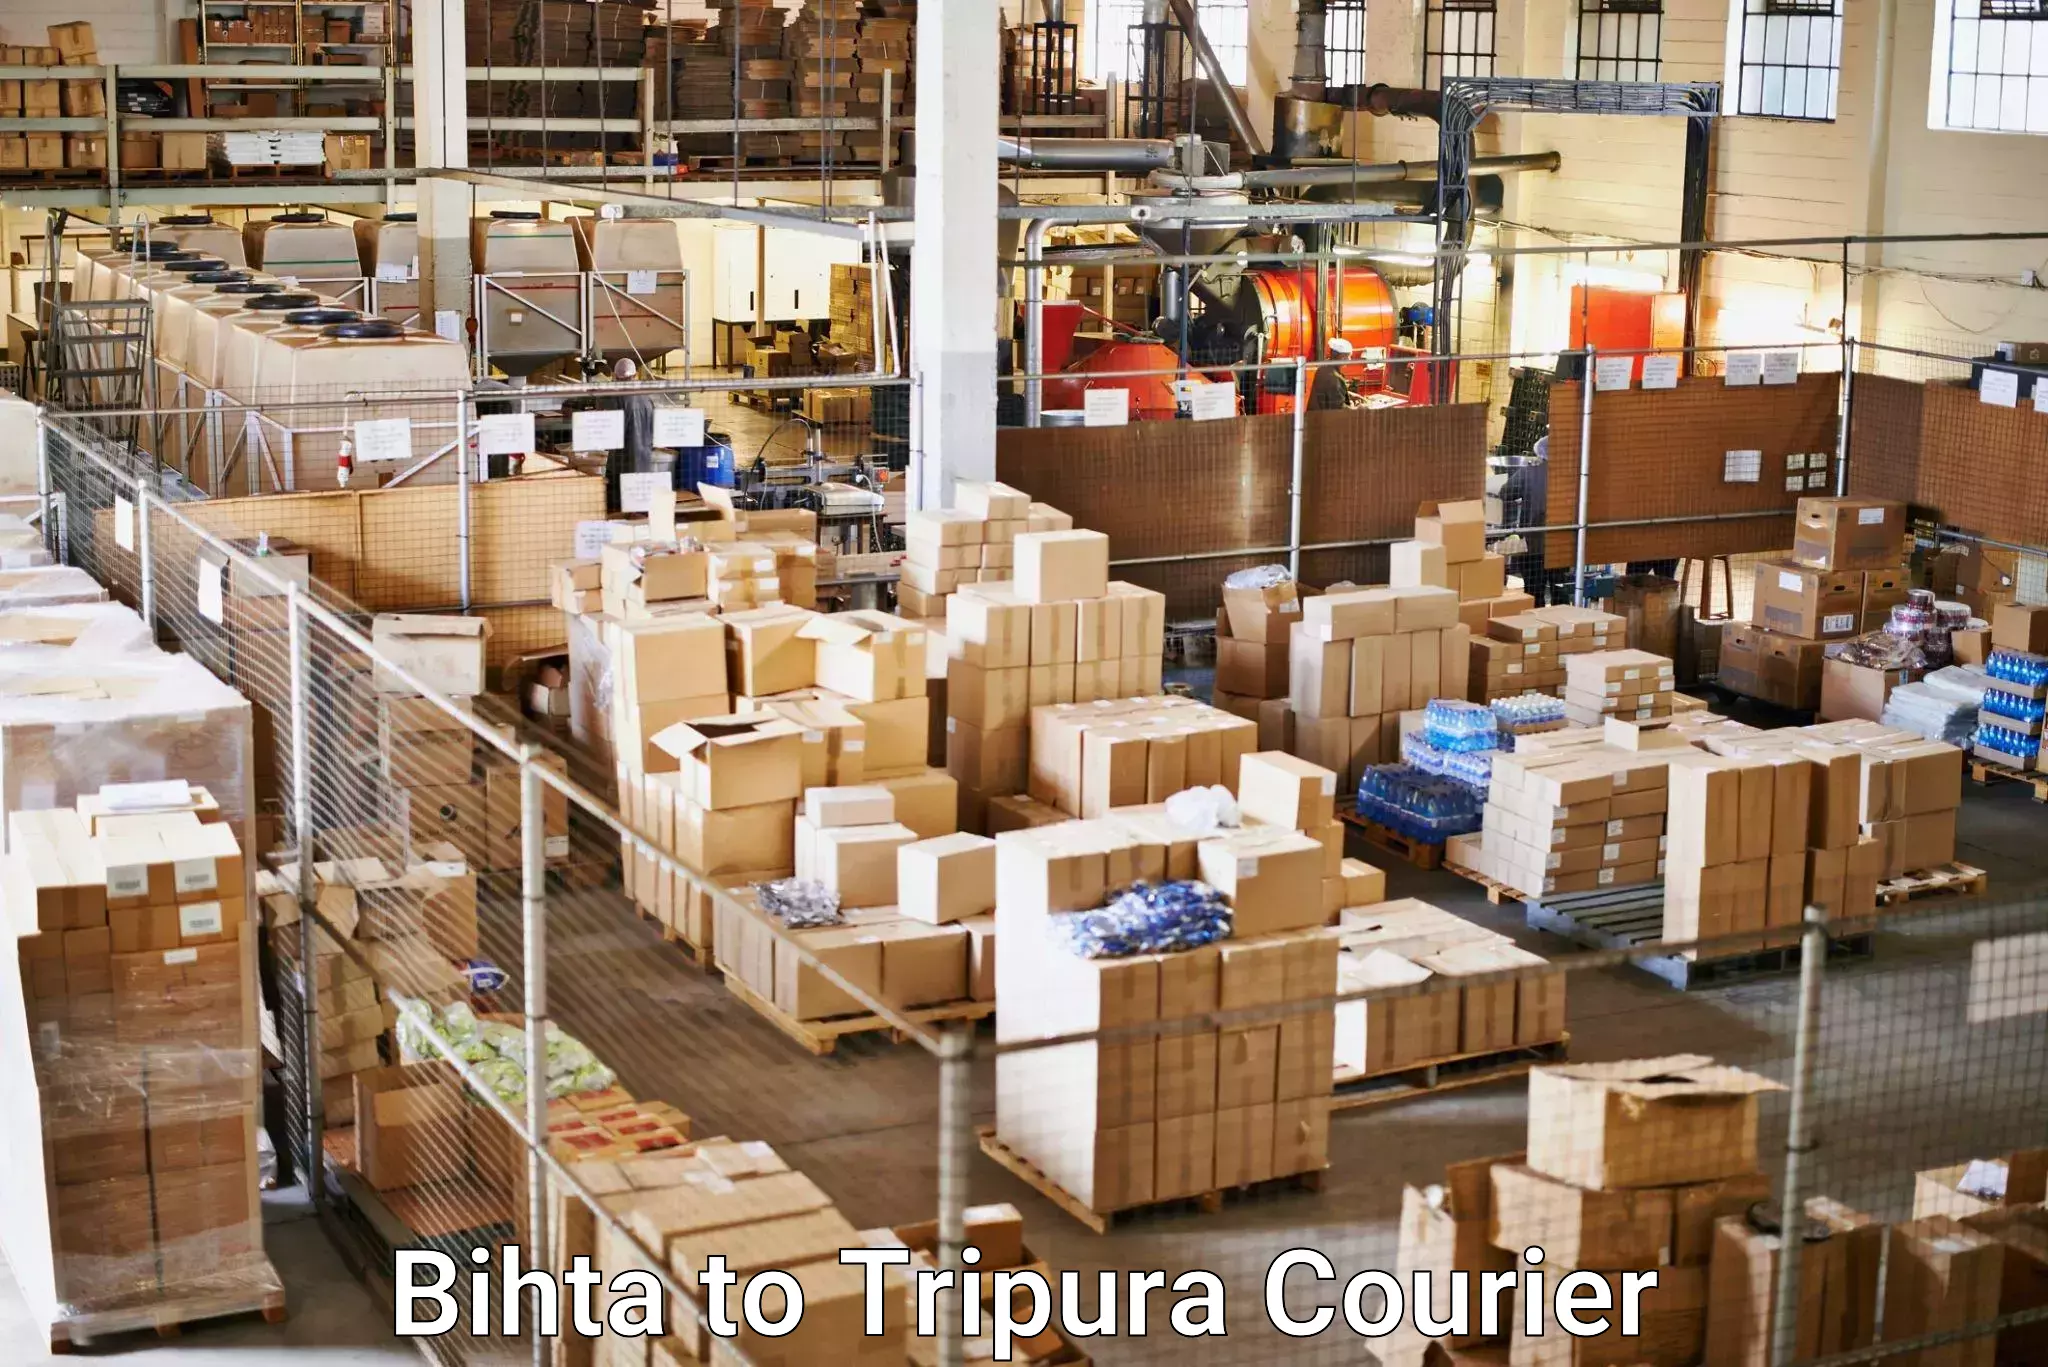 Global shipping networks Bihta to Tripura